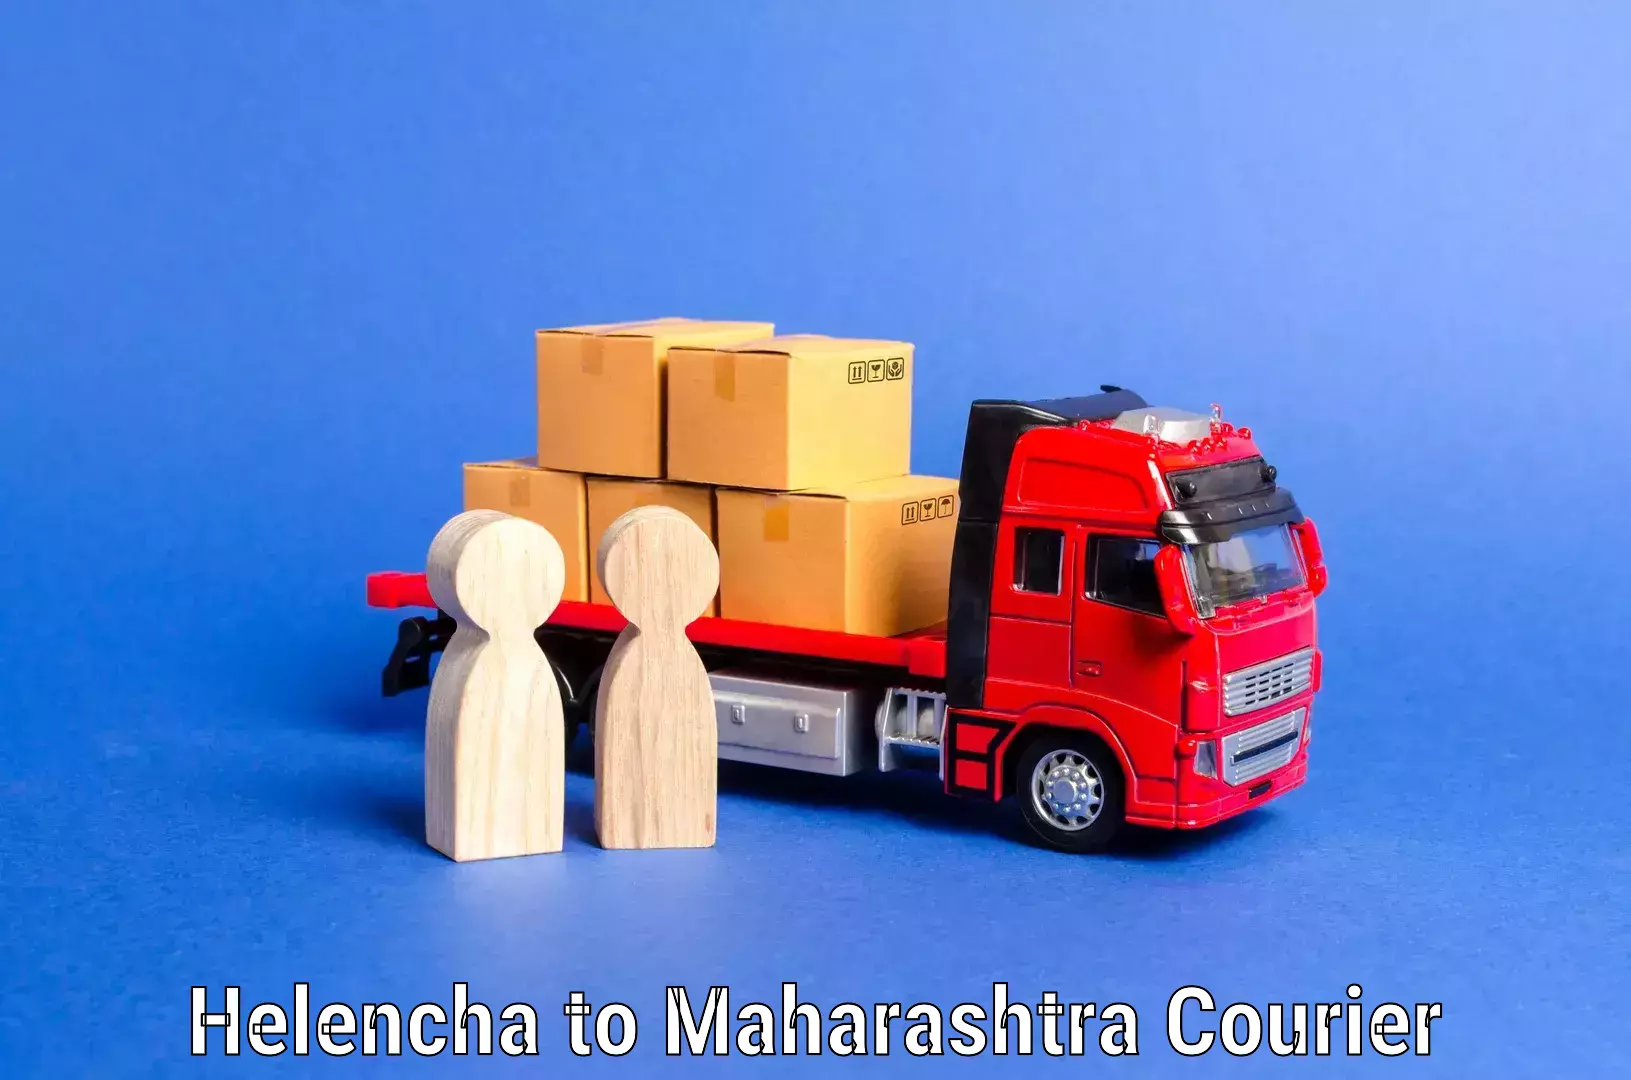 Furniture transport company Helencha to Maharashtra